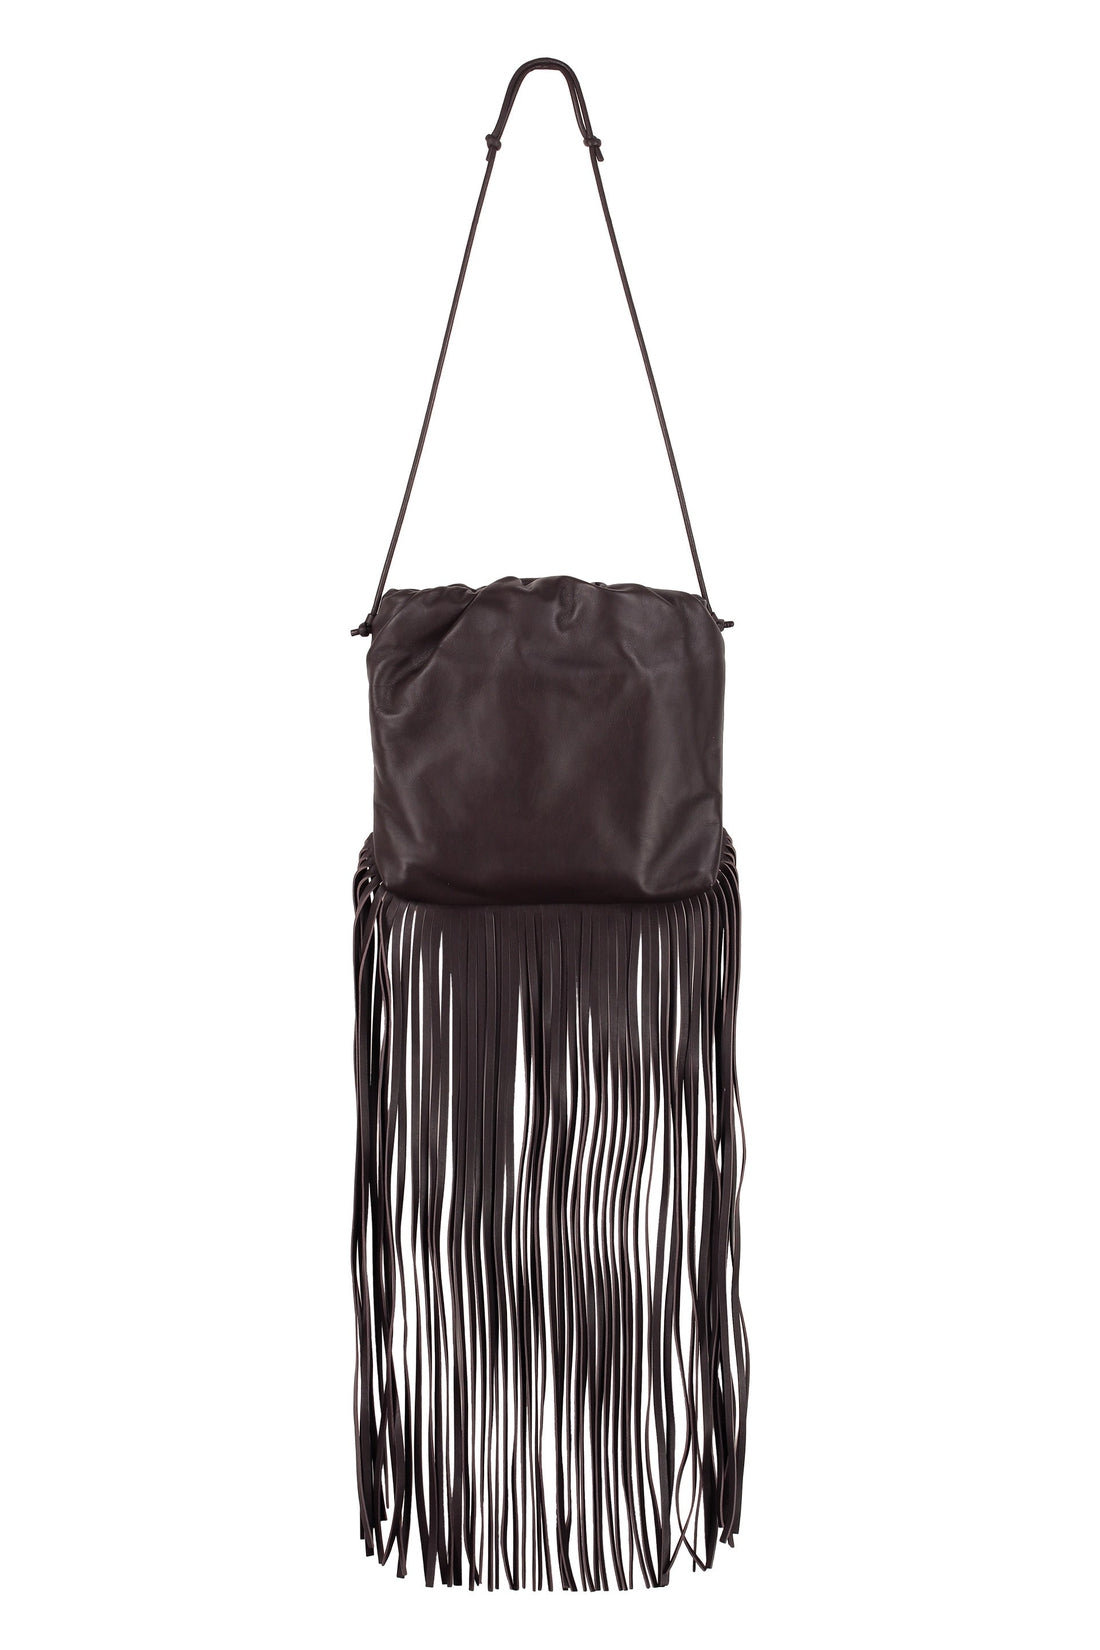 Bottega Veneta-OUTLET-SALE-Fringed leather shoulder bag-ARCHIVIST